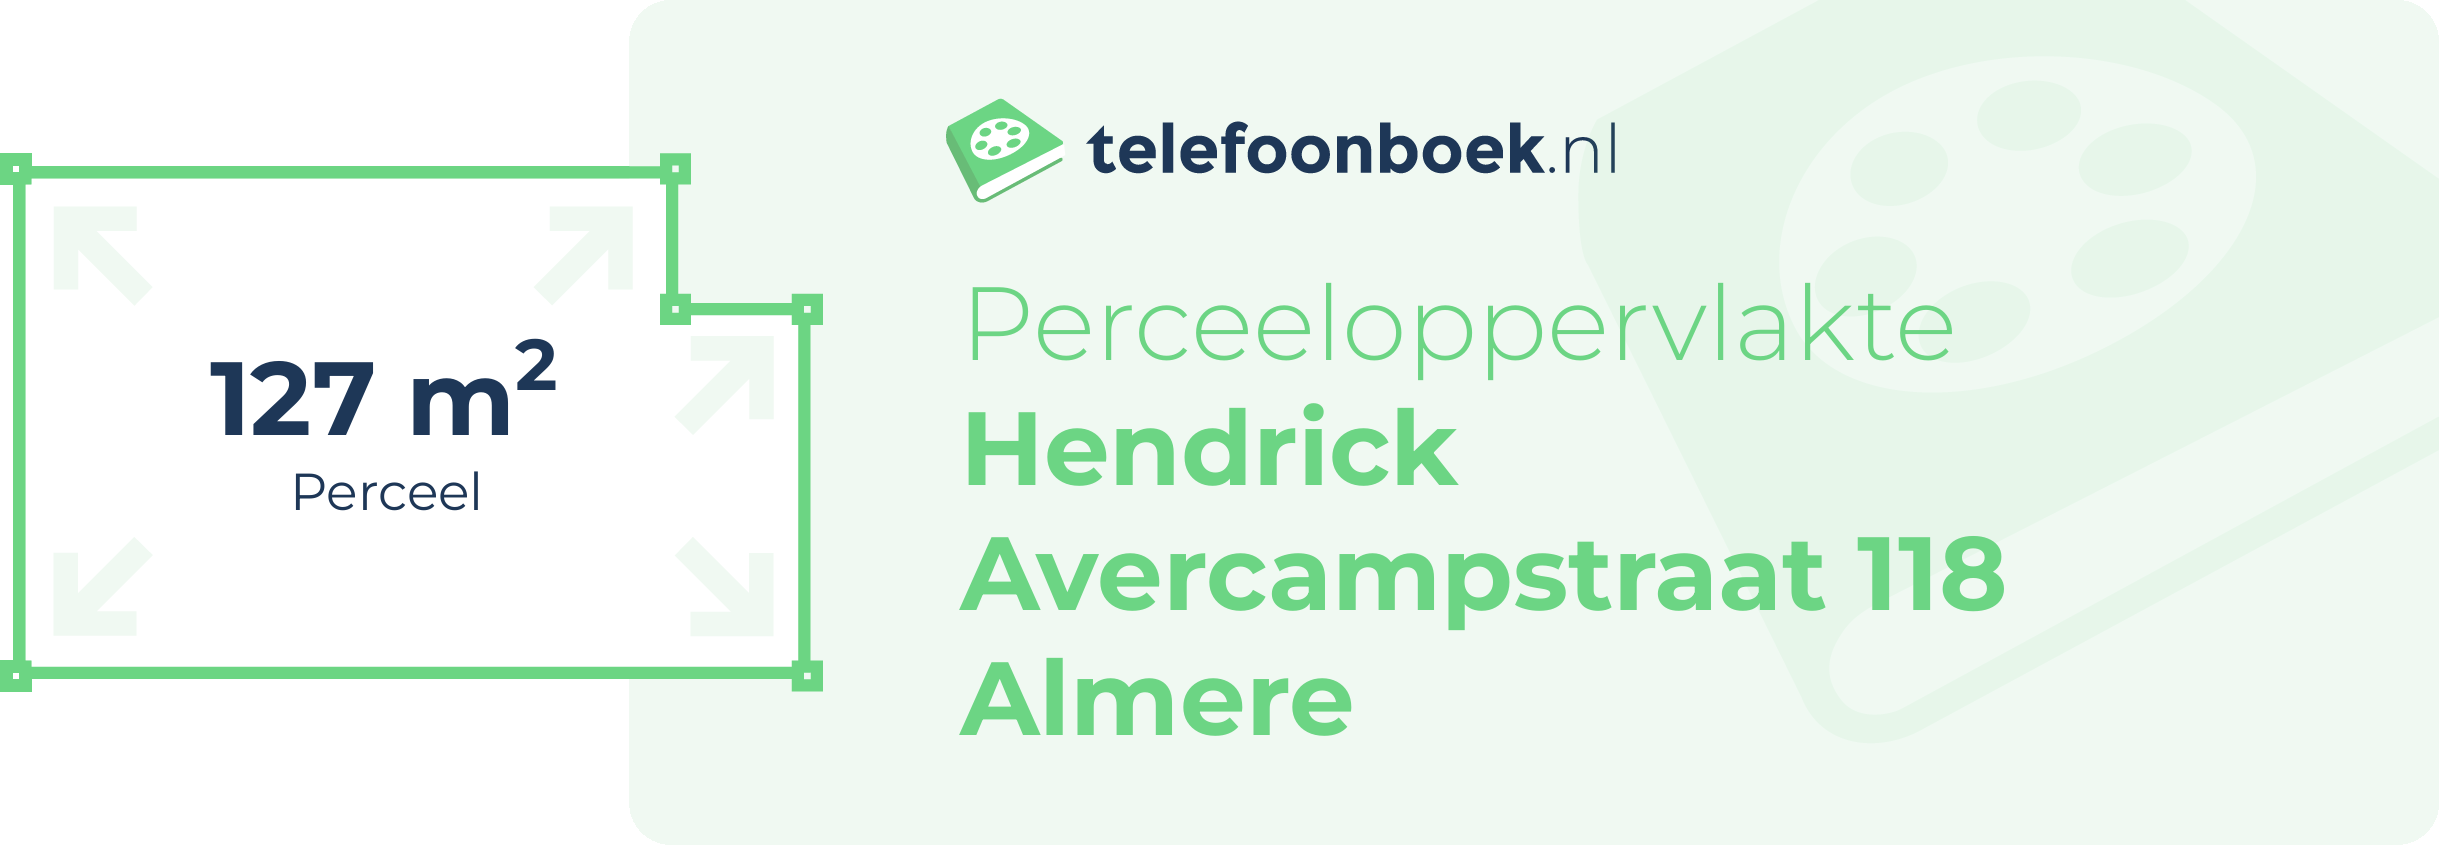 Perceeloppervlakte Hendrick Avercampstraat 118 Almere